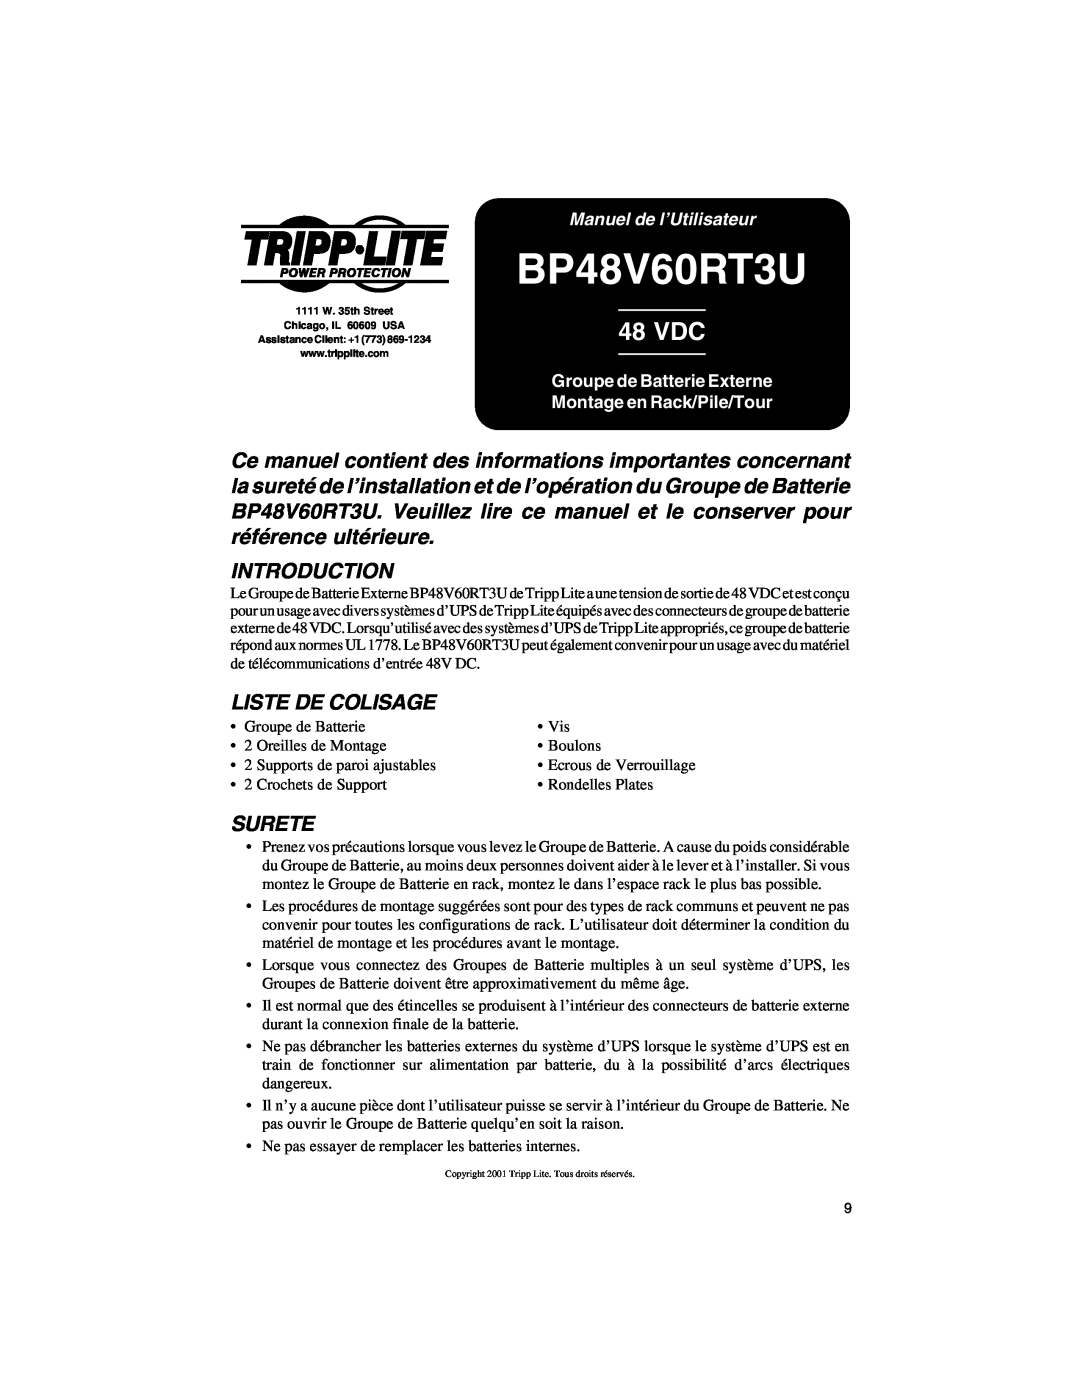 Tripp Lite BP48V60RT3U owner manual Liste De Colisage, Surete, Manuel de l’Utilisateur, 48 VDC, Introduction 